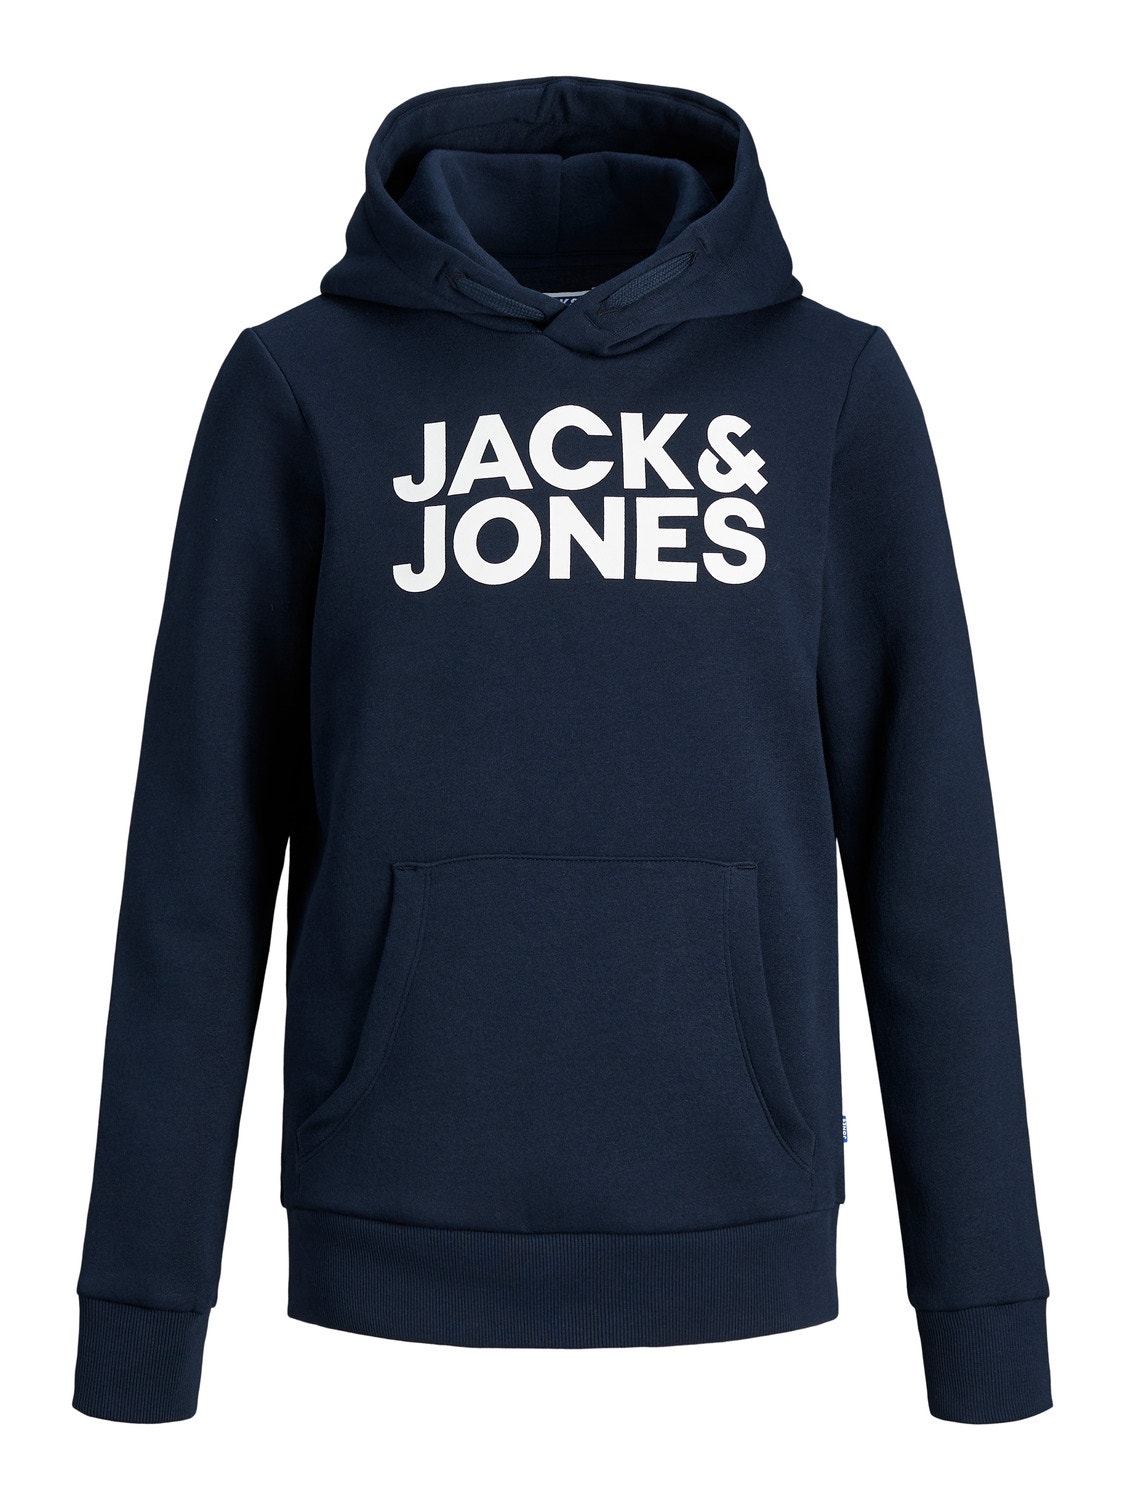 Jack & Jones Z logo Bluza z kapturem Dla chłopców -Navy Blazer - 12152841